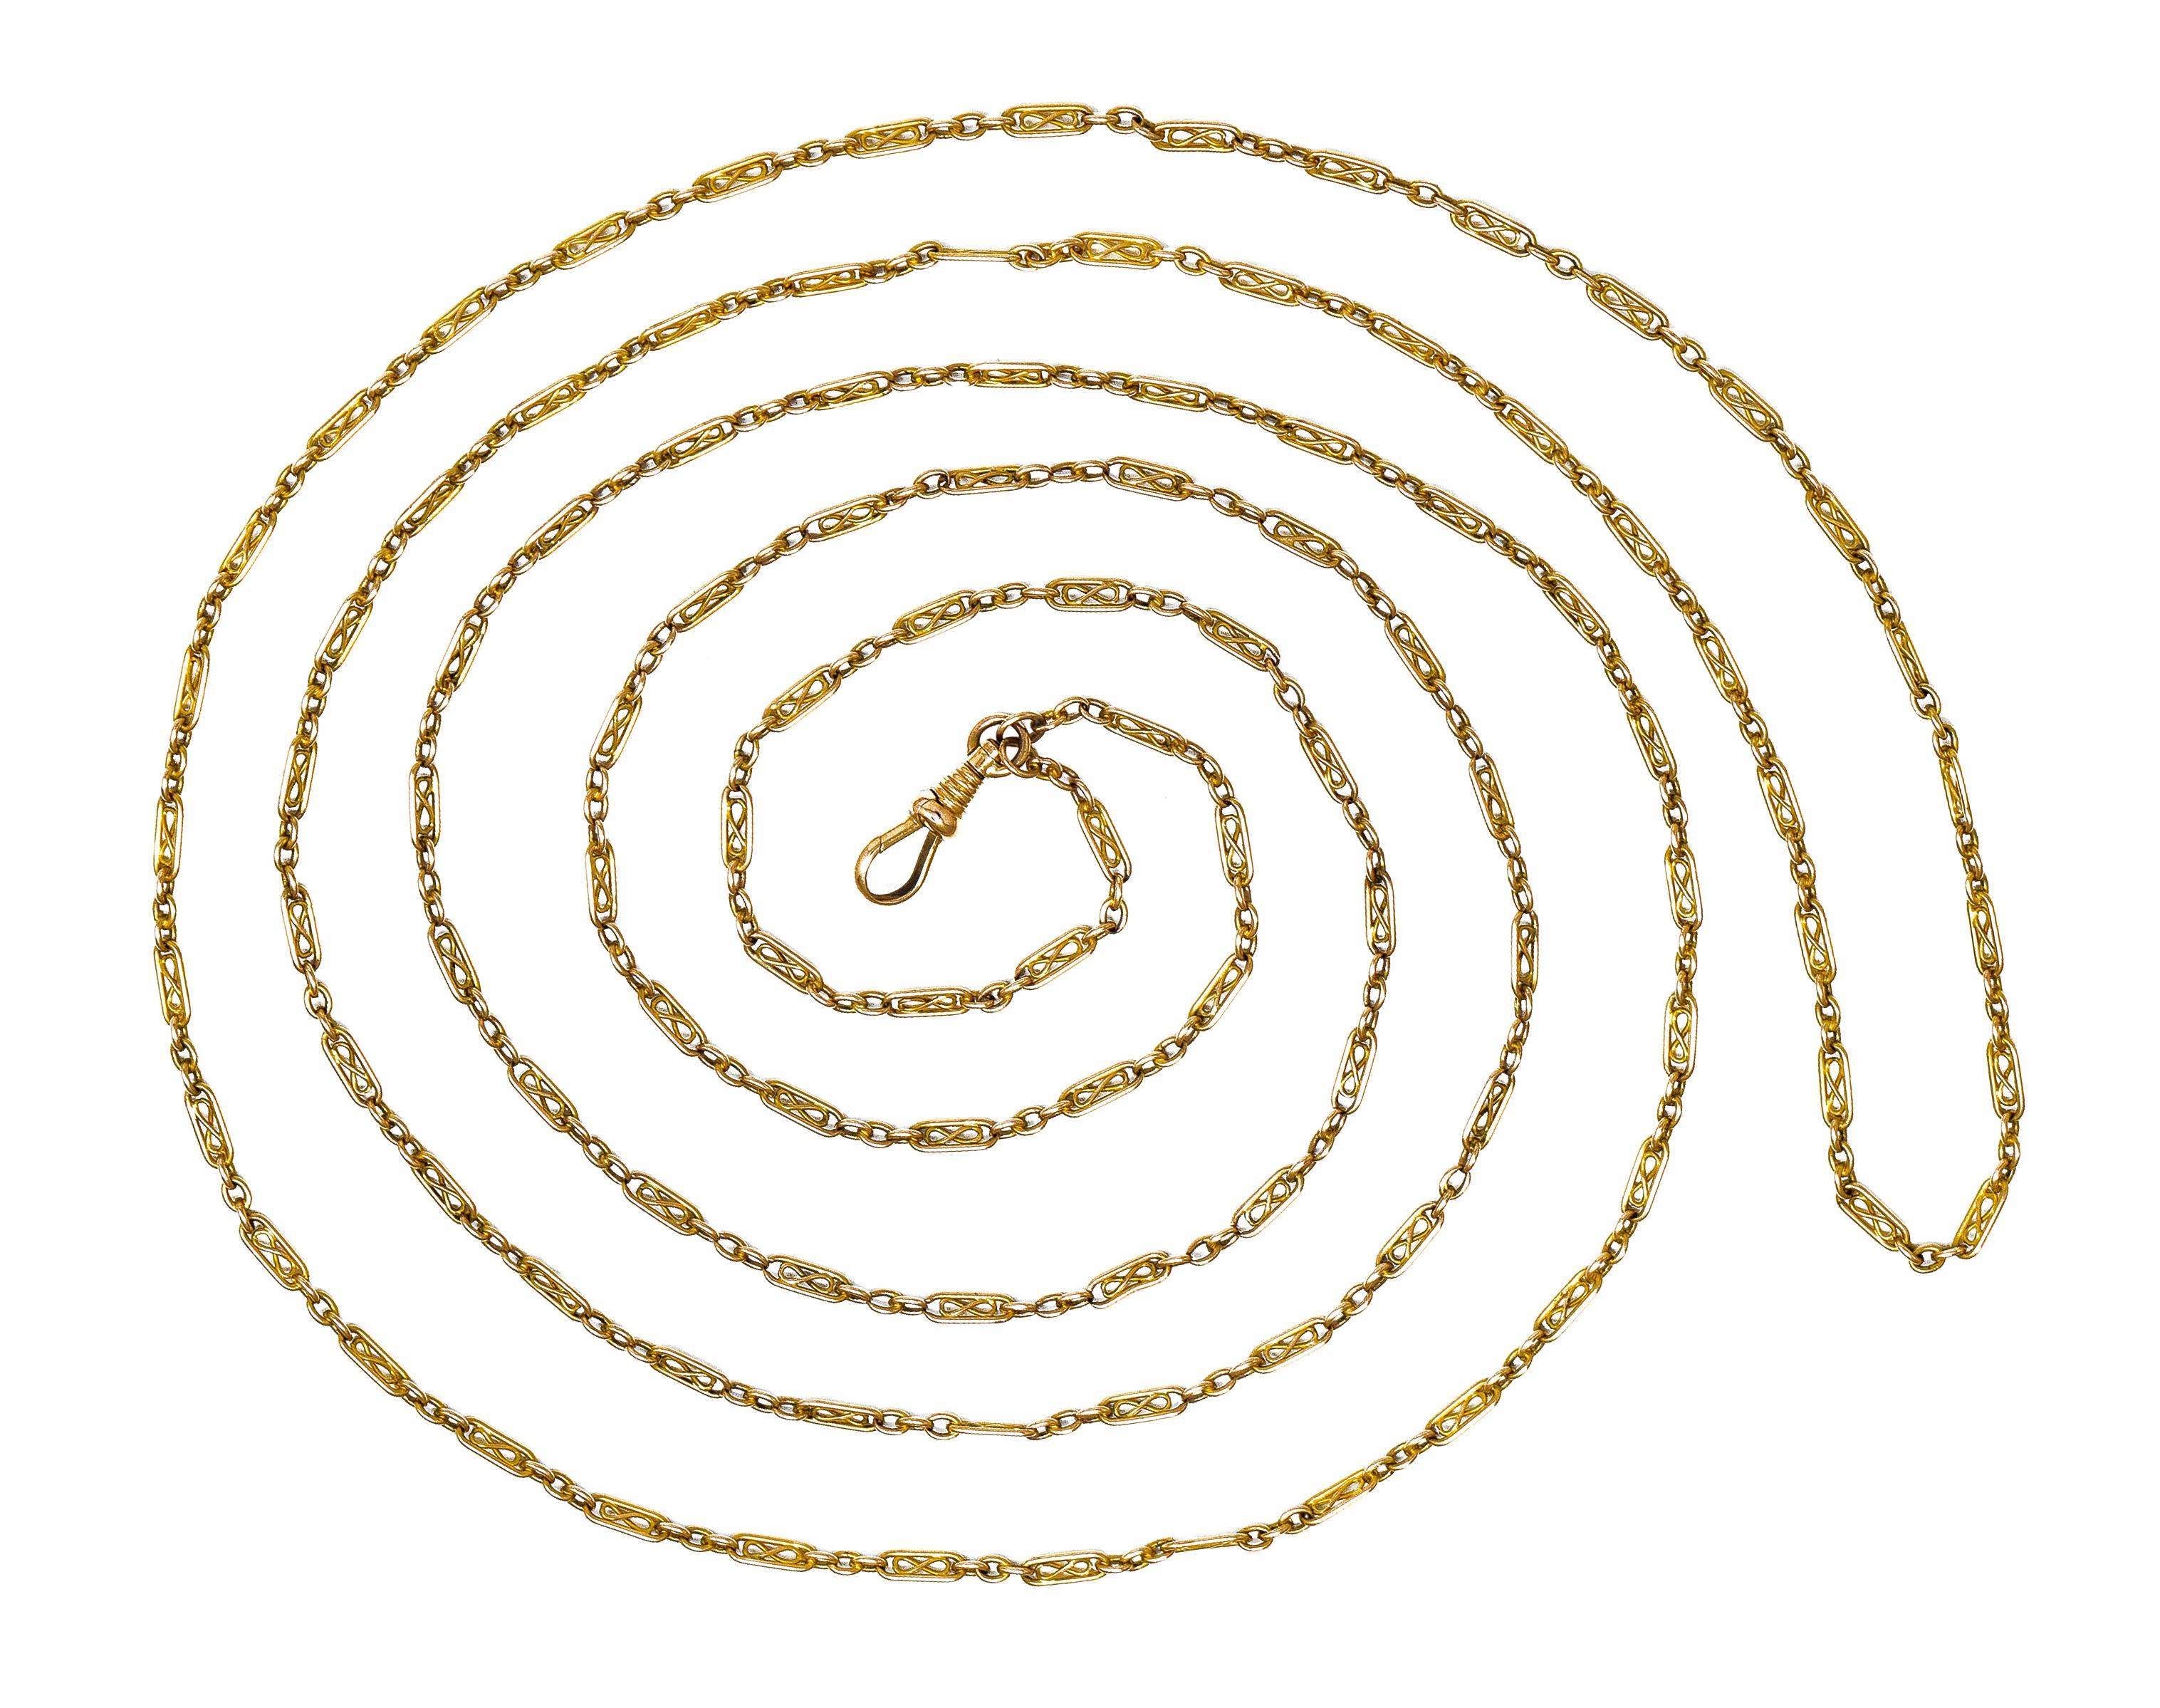 Bestehend aus Kabelgliederkette im Wechsel mit länglichen ovalen Gliedern
Filigranes Unendlichkeitsmotiv in der Mitte
Vervollständigt durch einen großen Karabinerverschluß
Geprüft als 14 Karat Gold
CIRCA: 1860er Jahre
Breite an der breitesten